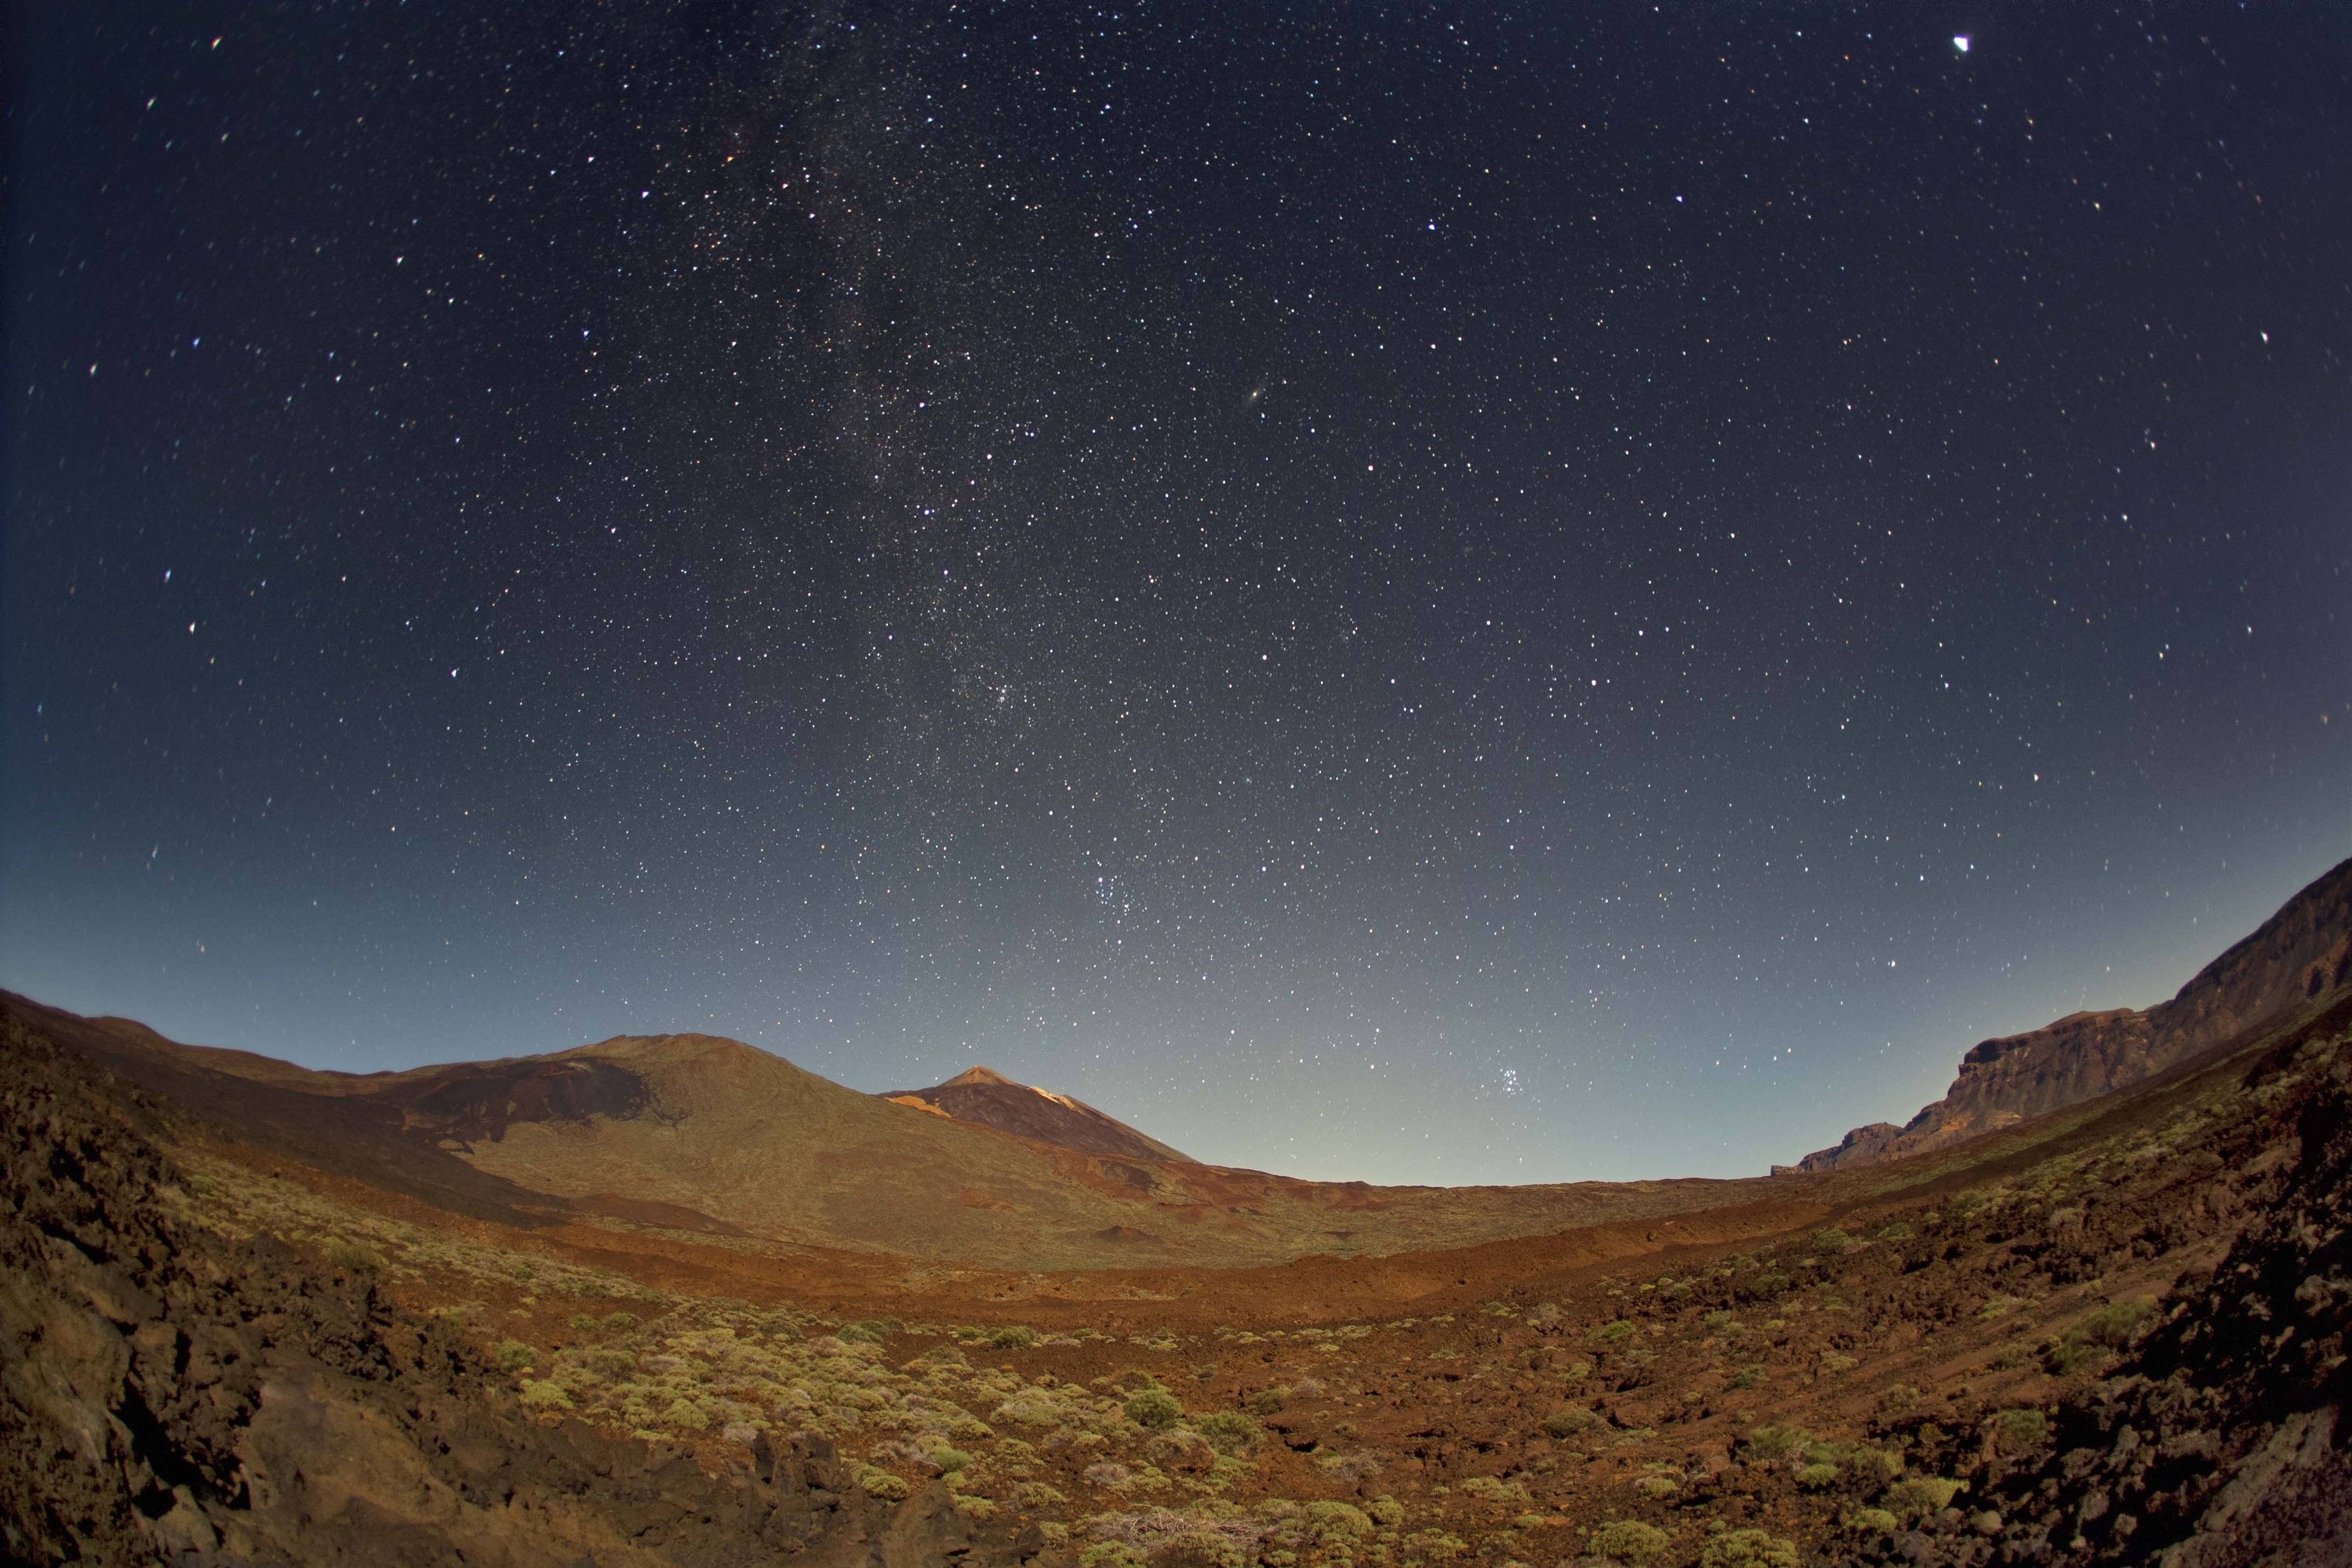 Tenerife apuesta por observar los fenómenos astronómicos desde sus paisajes volcánicos